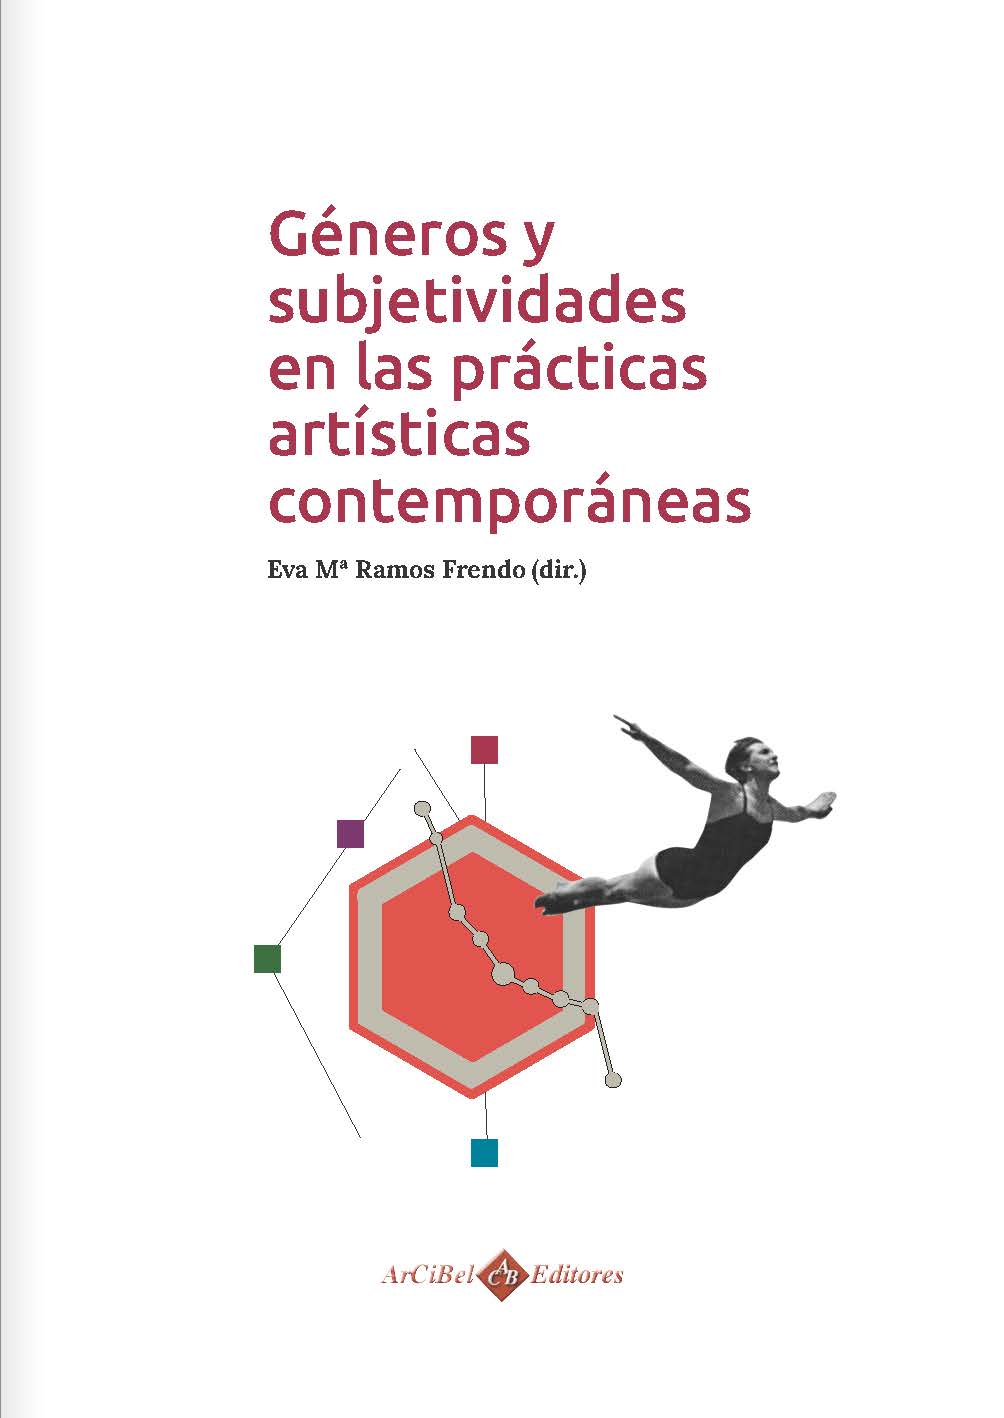 Imagen de portada del libro Géneros y subjetividades en las prácticas artísticas contemporáneas